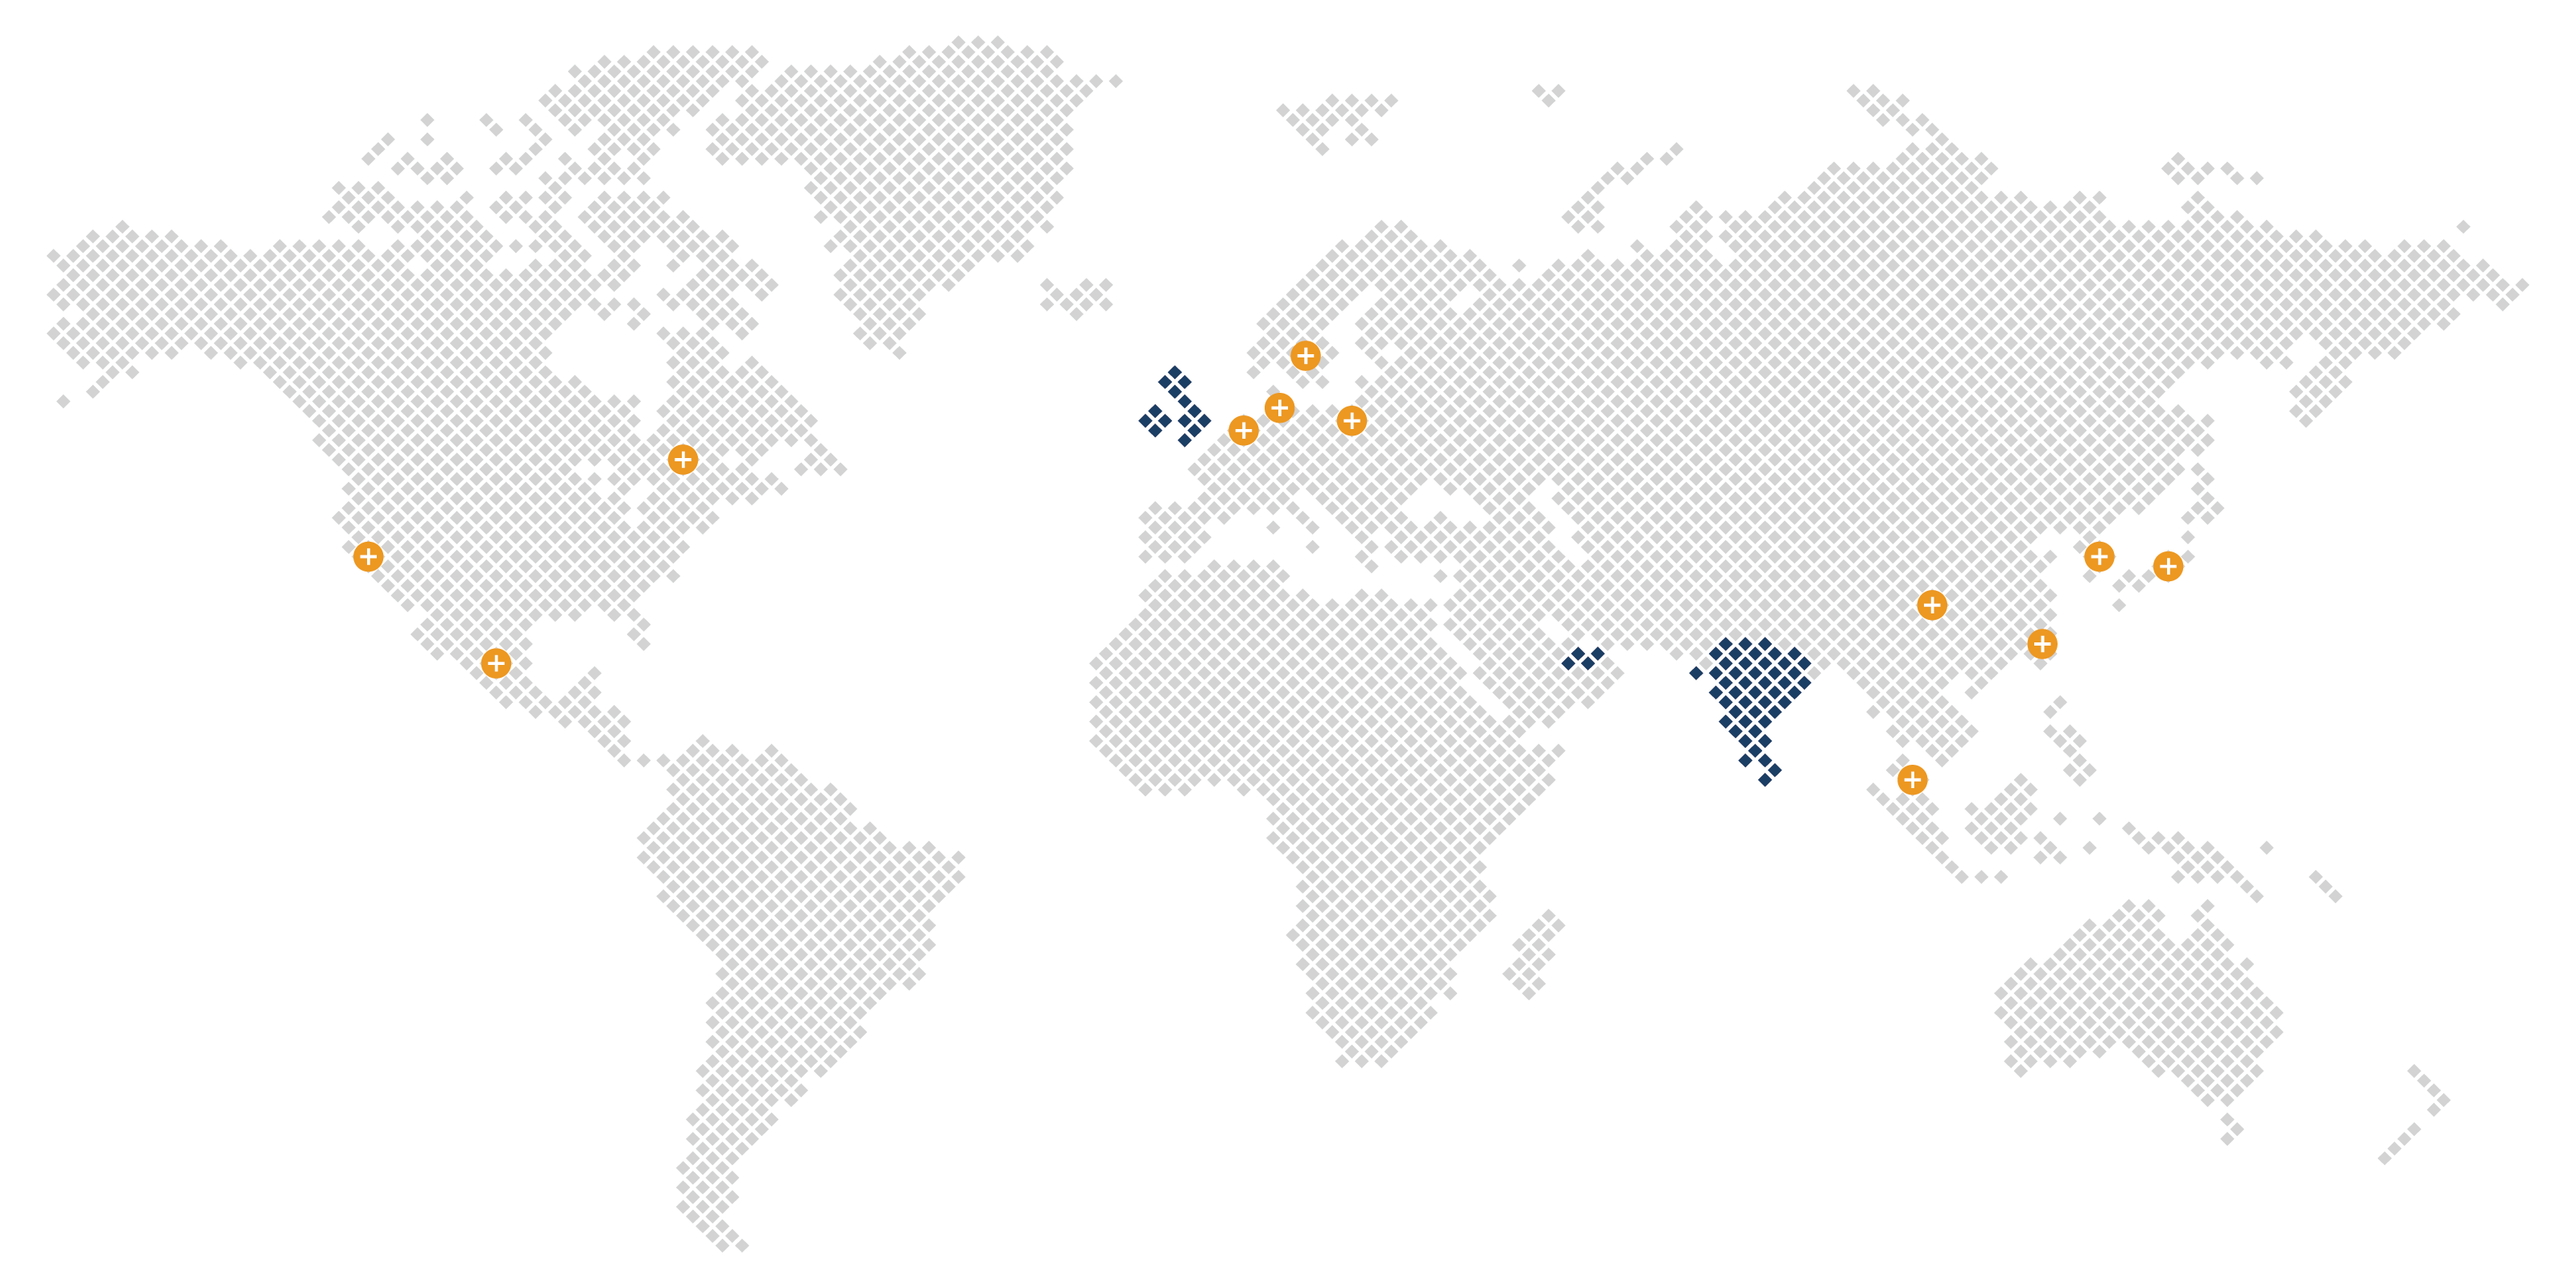 World Map with United Kingdom, Ireland, UAE, and India highlighted